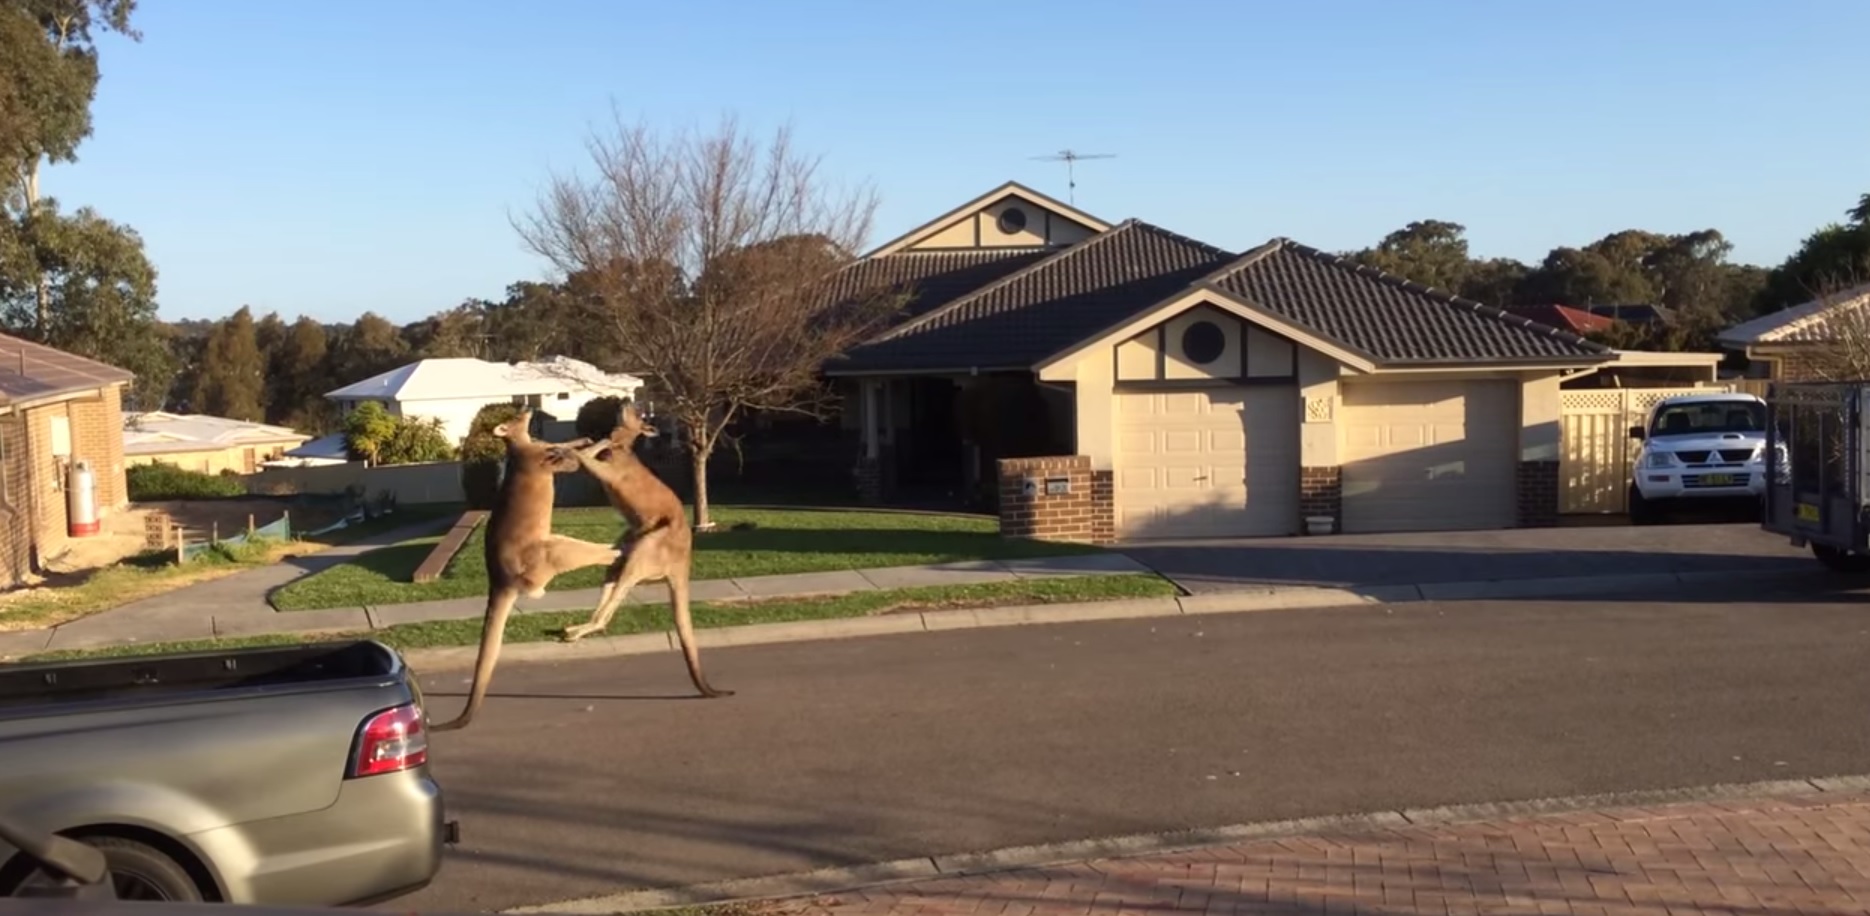 Bataille de rue de kangourous